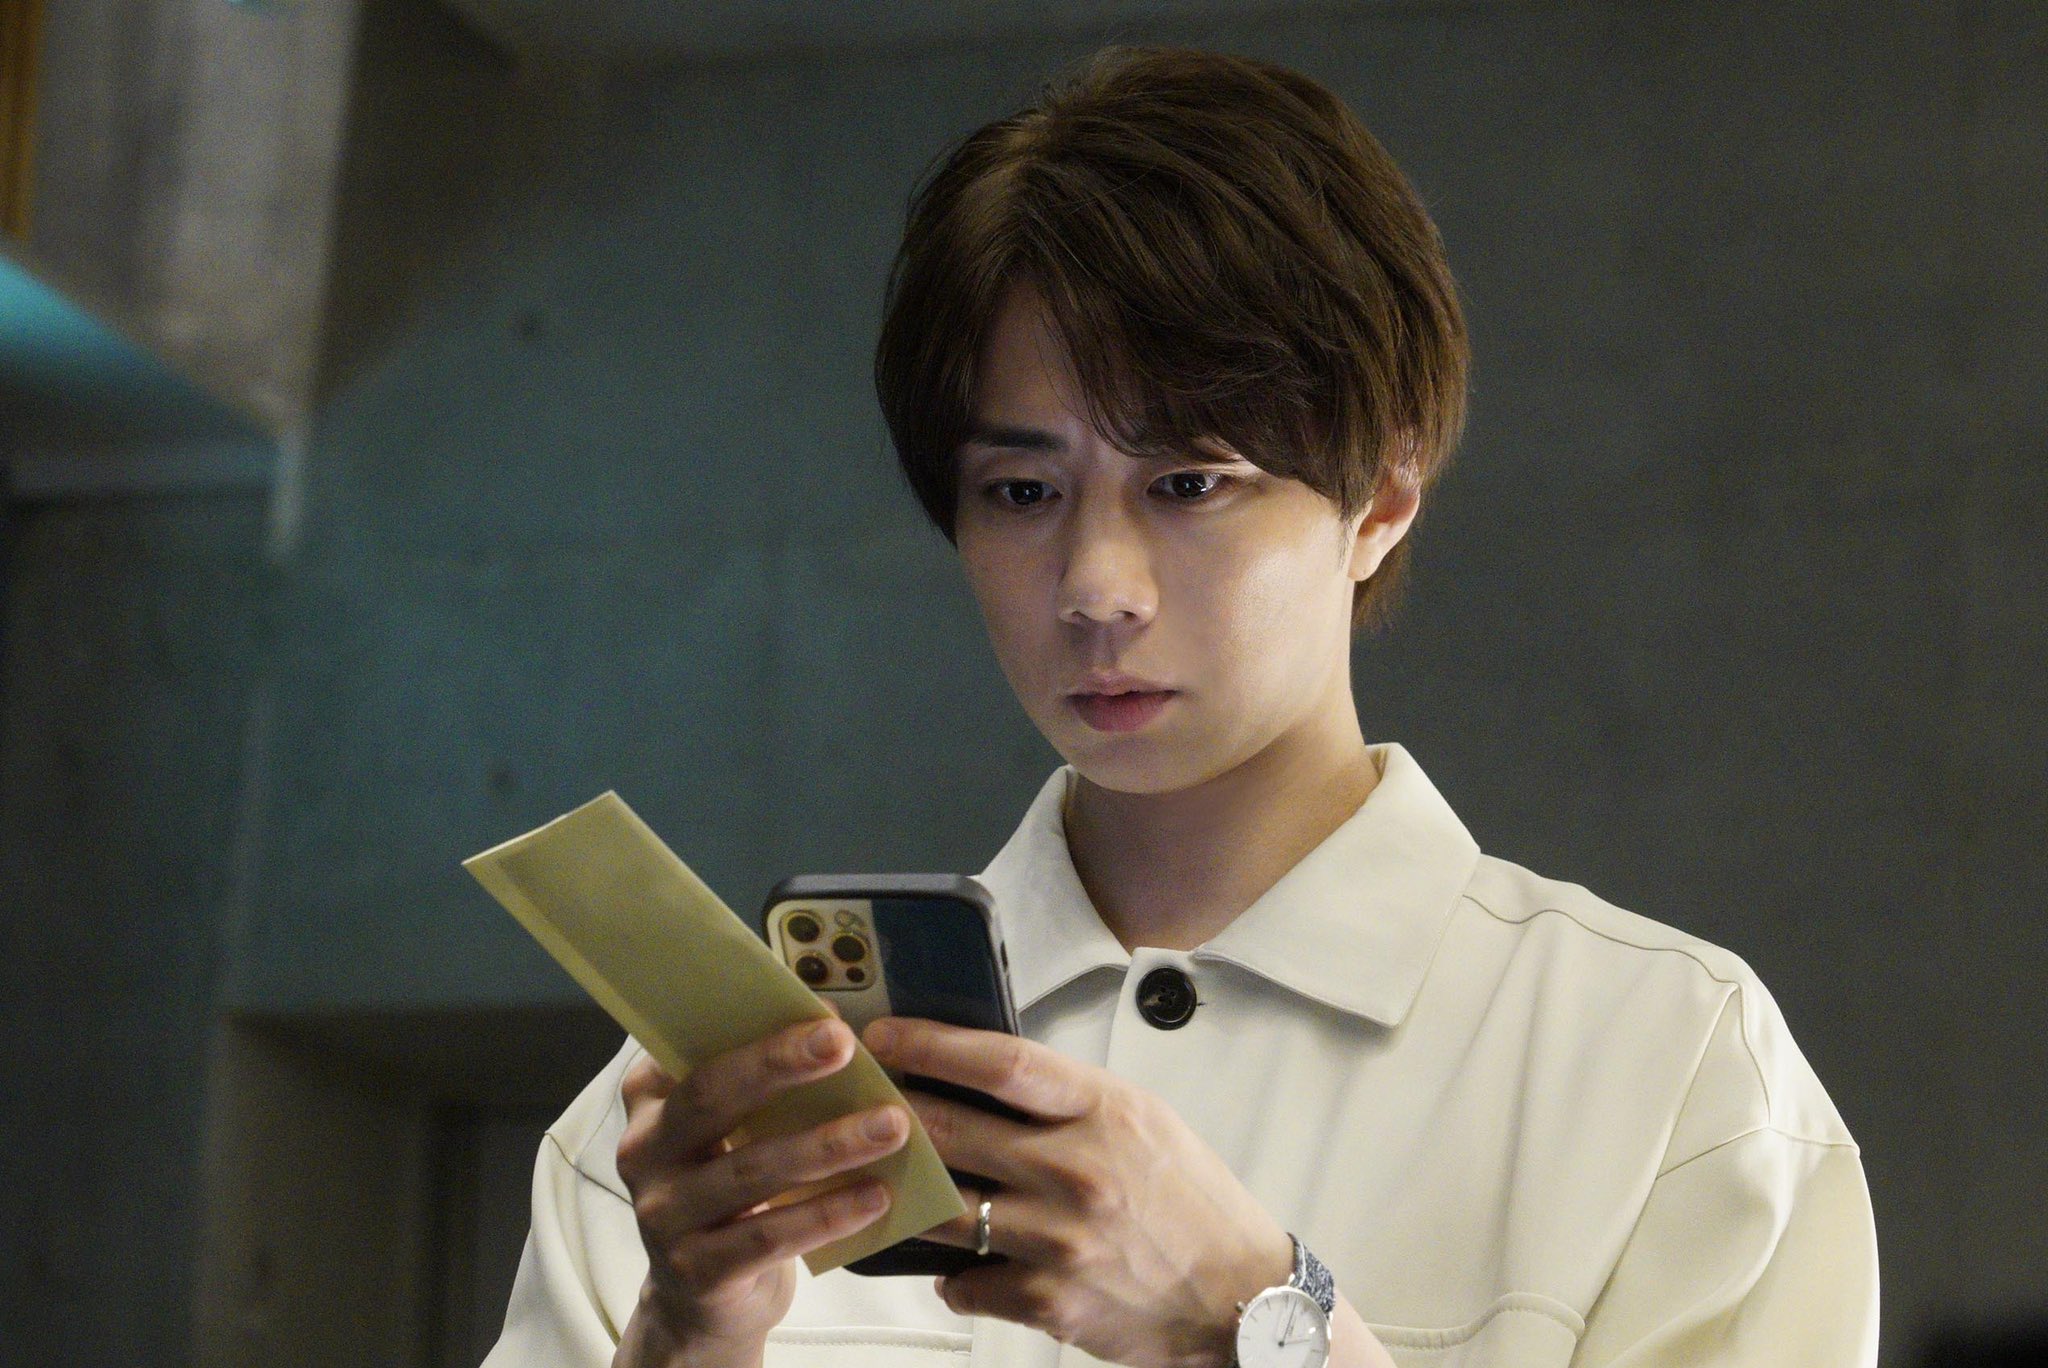 Der Webdesigner Takuya Yamanabe (gespielt vom Schauspieler Hiromitsu Kitayama) scrollt in einer Szene aus dem kommenden Film mit einem besorgten Gesichtsausdruck durch eine verdächtige Smartphone-App "Otodokemono" Segment für das Live-Action-TV-Programm „Tales of the Unusual“ im Sommer 2022.